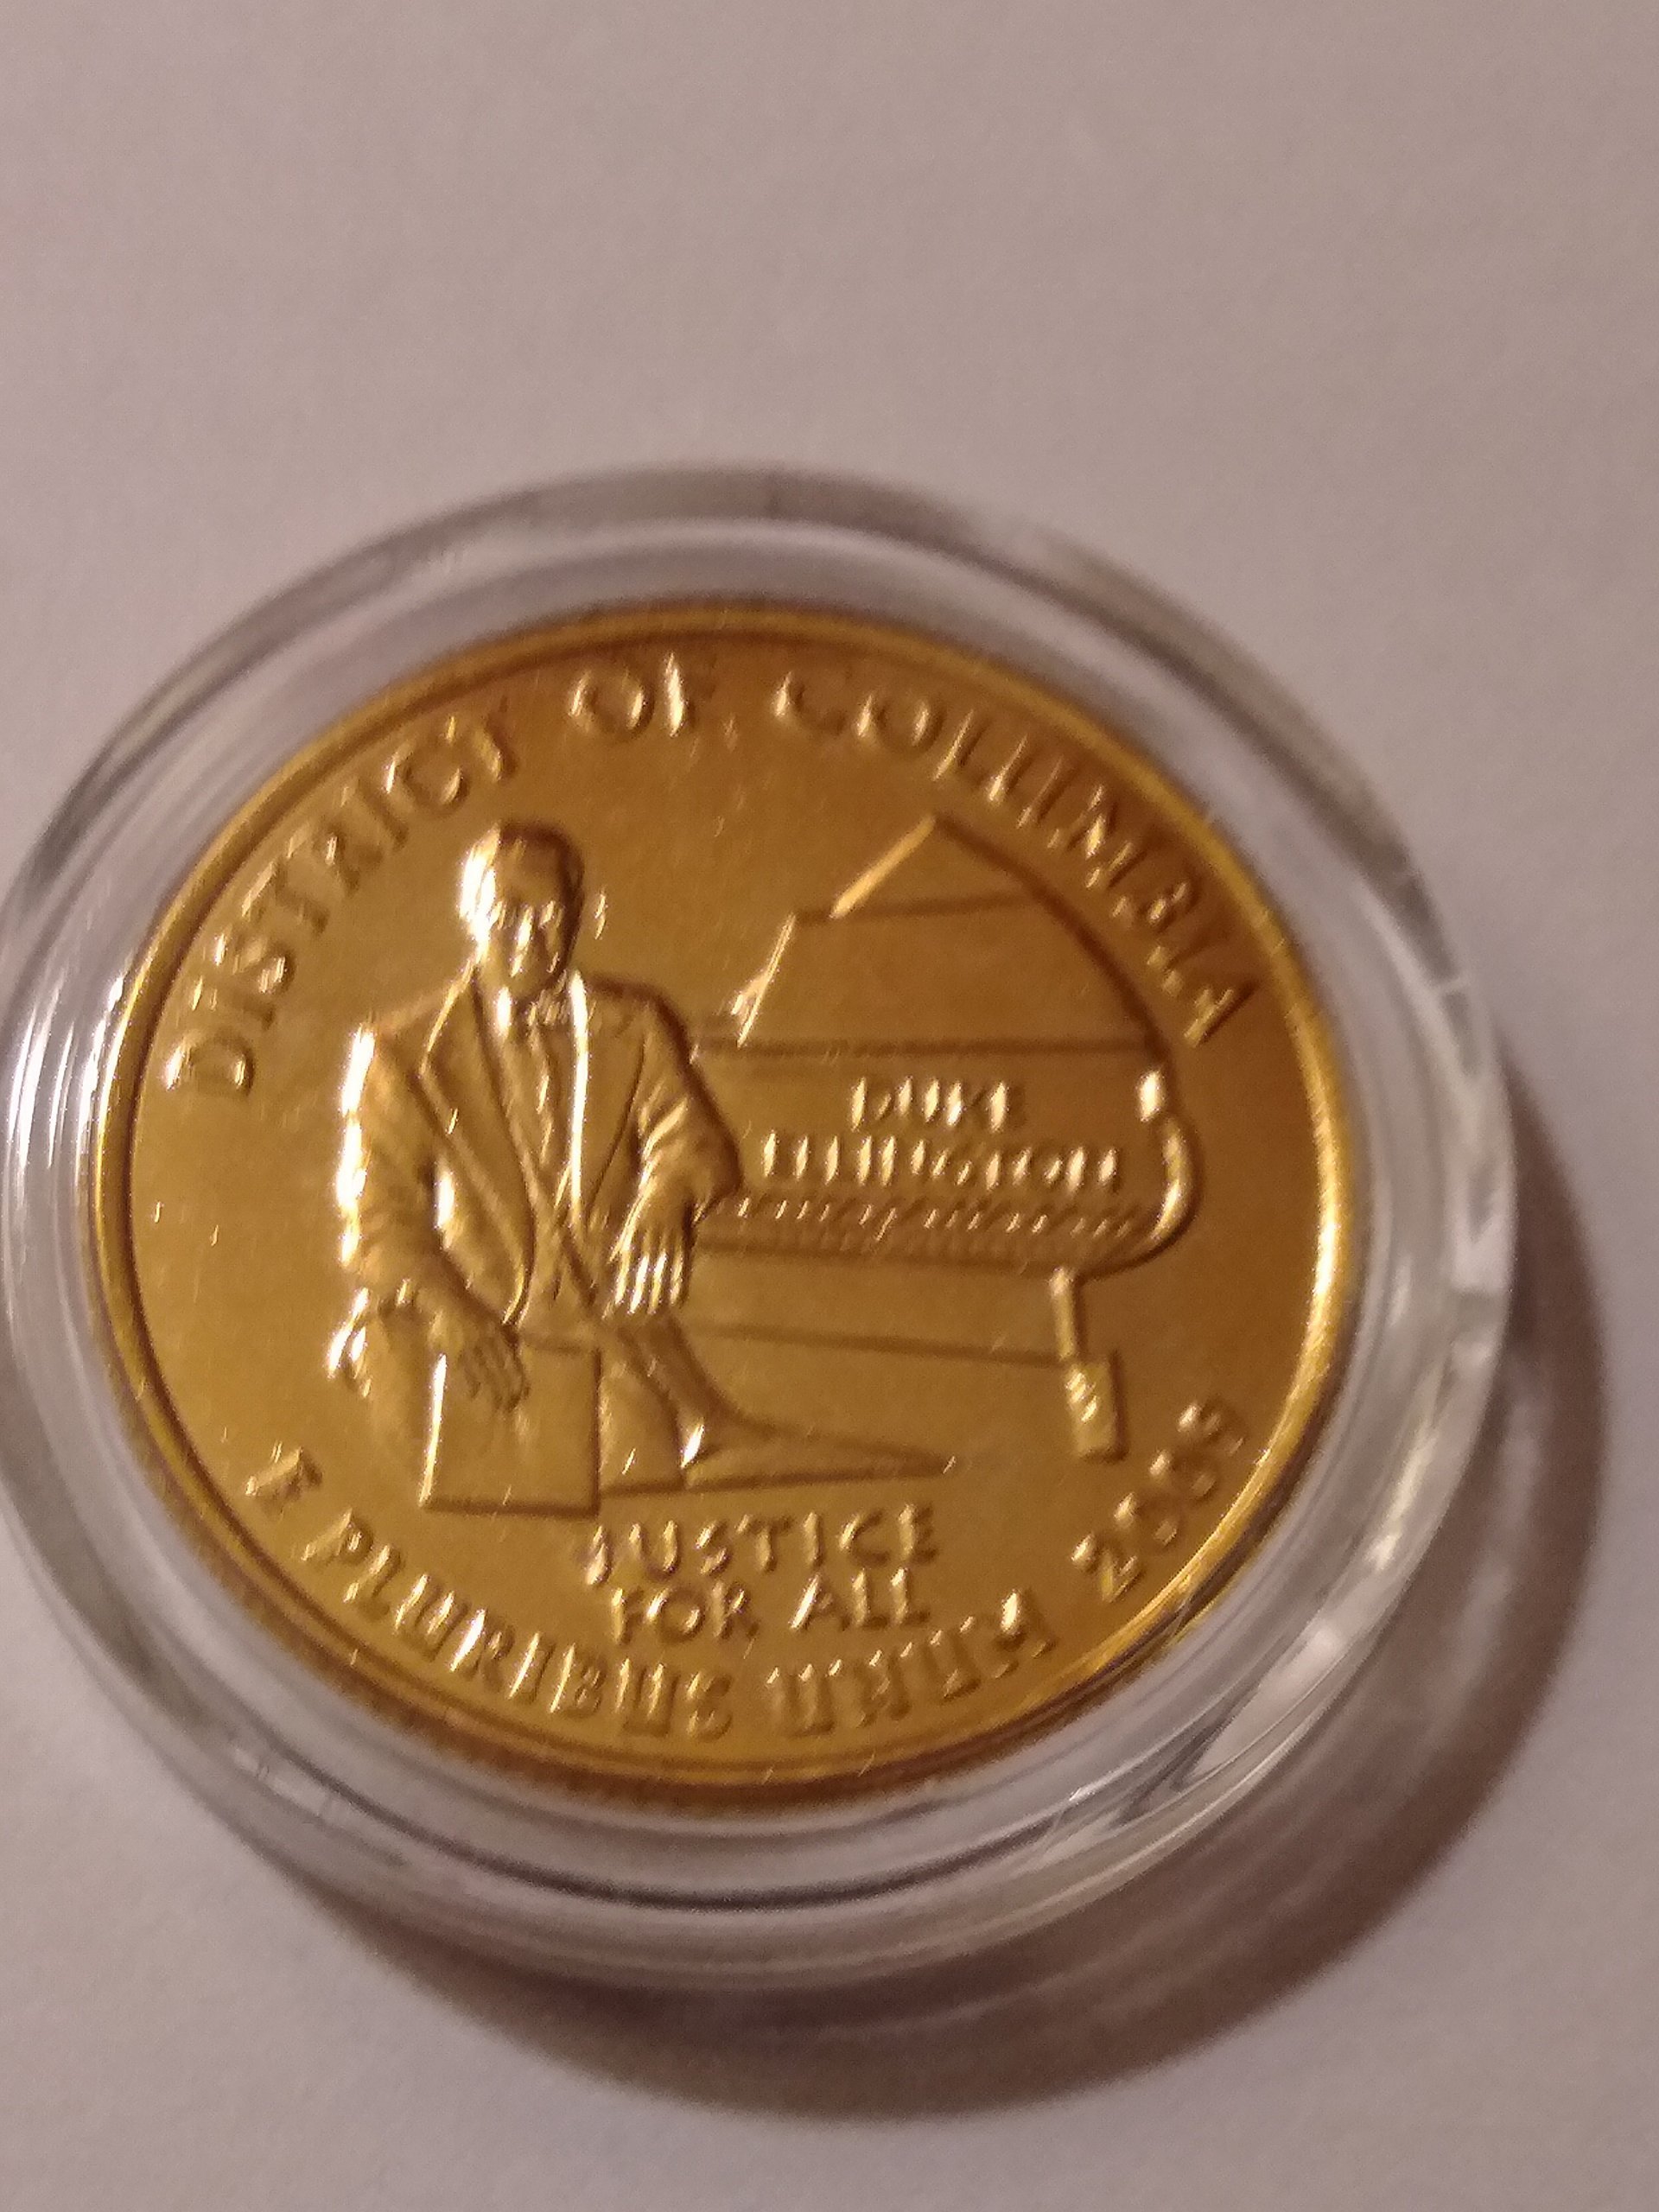 Barack Obama President 24 Karat Gold Plated Dollar Coin | Coin Talk